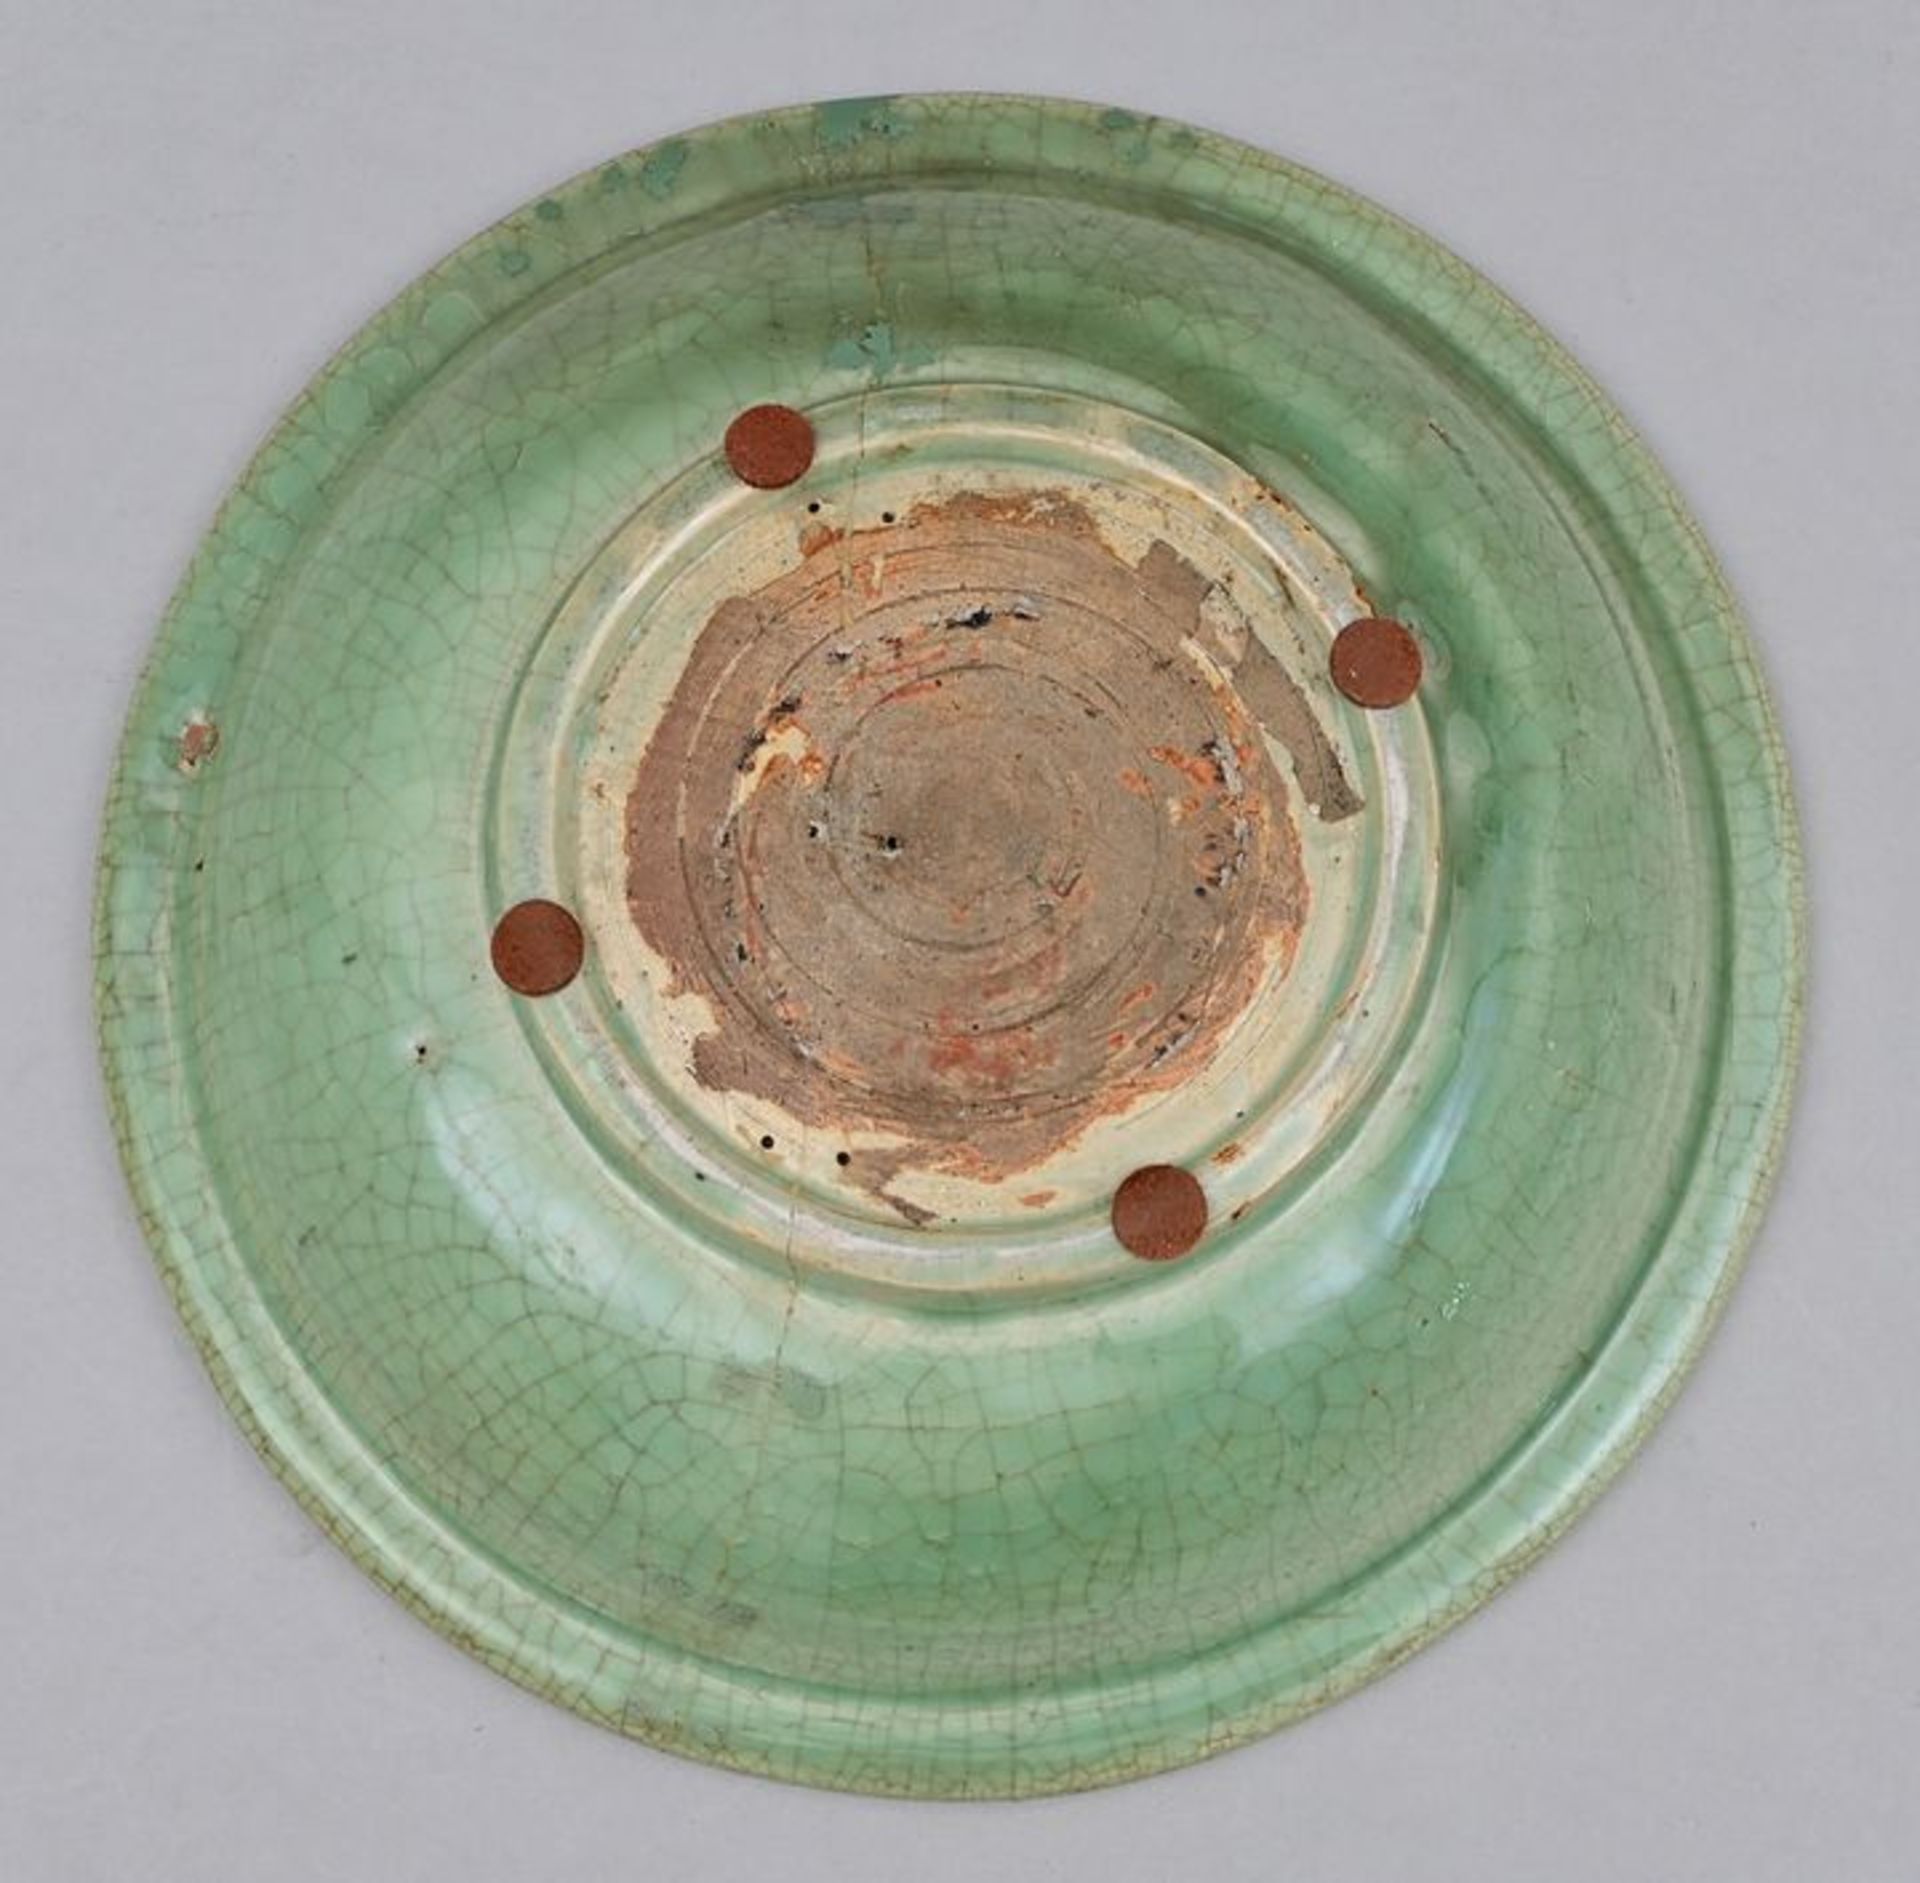 Platte grüne Glasur/ greenware plate - Bild 4 aus 4